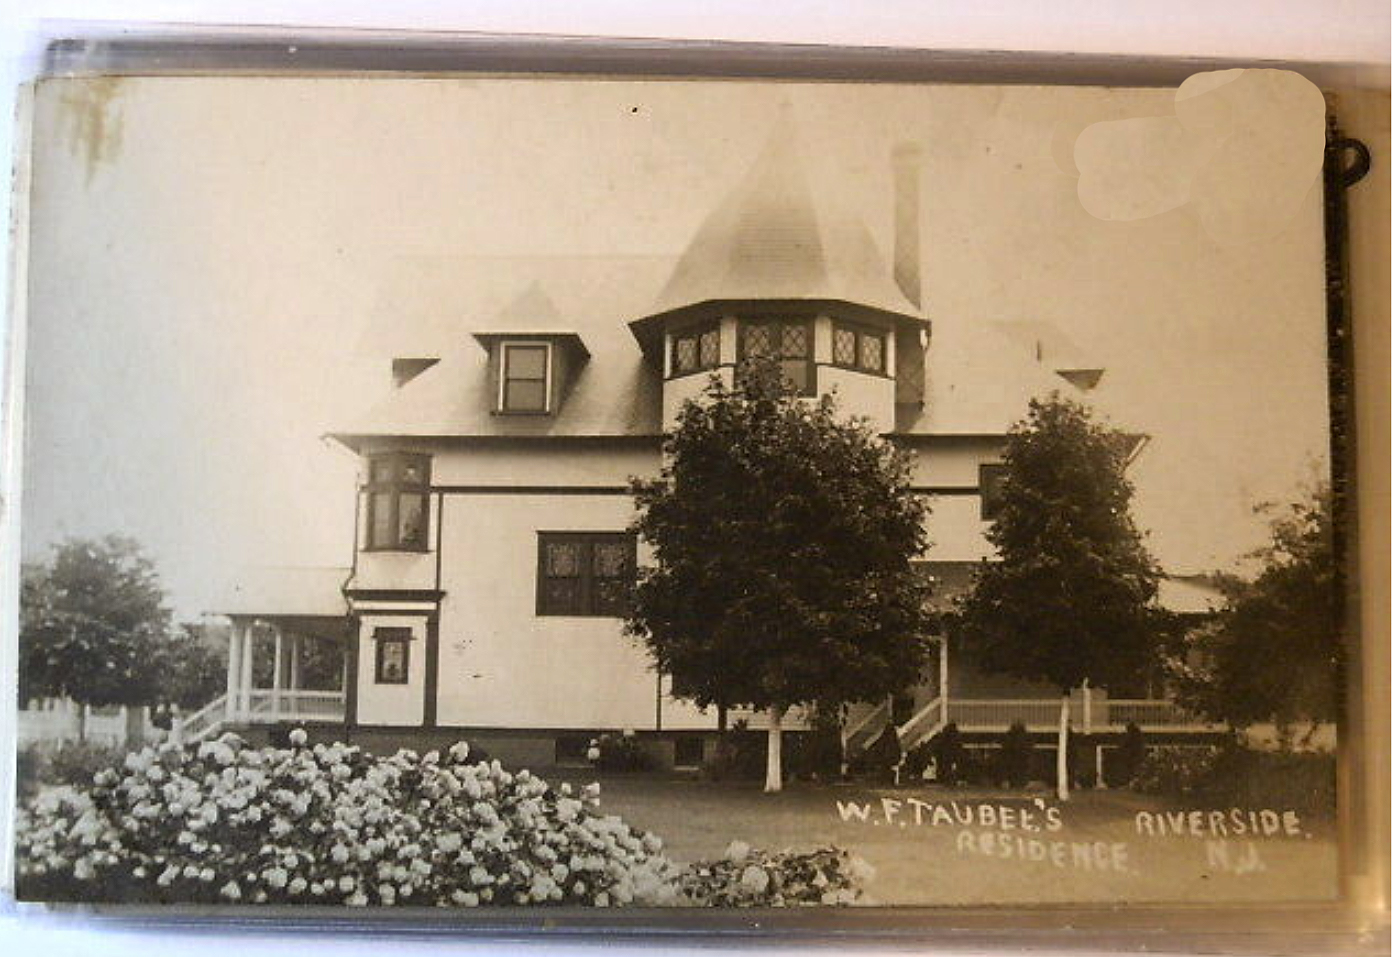 Riverside - W F Taubees Residence - c 1910